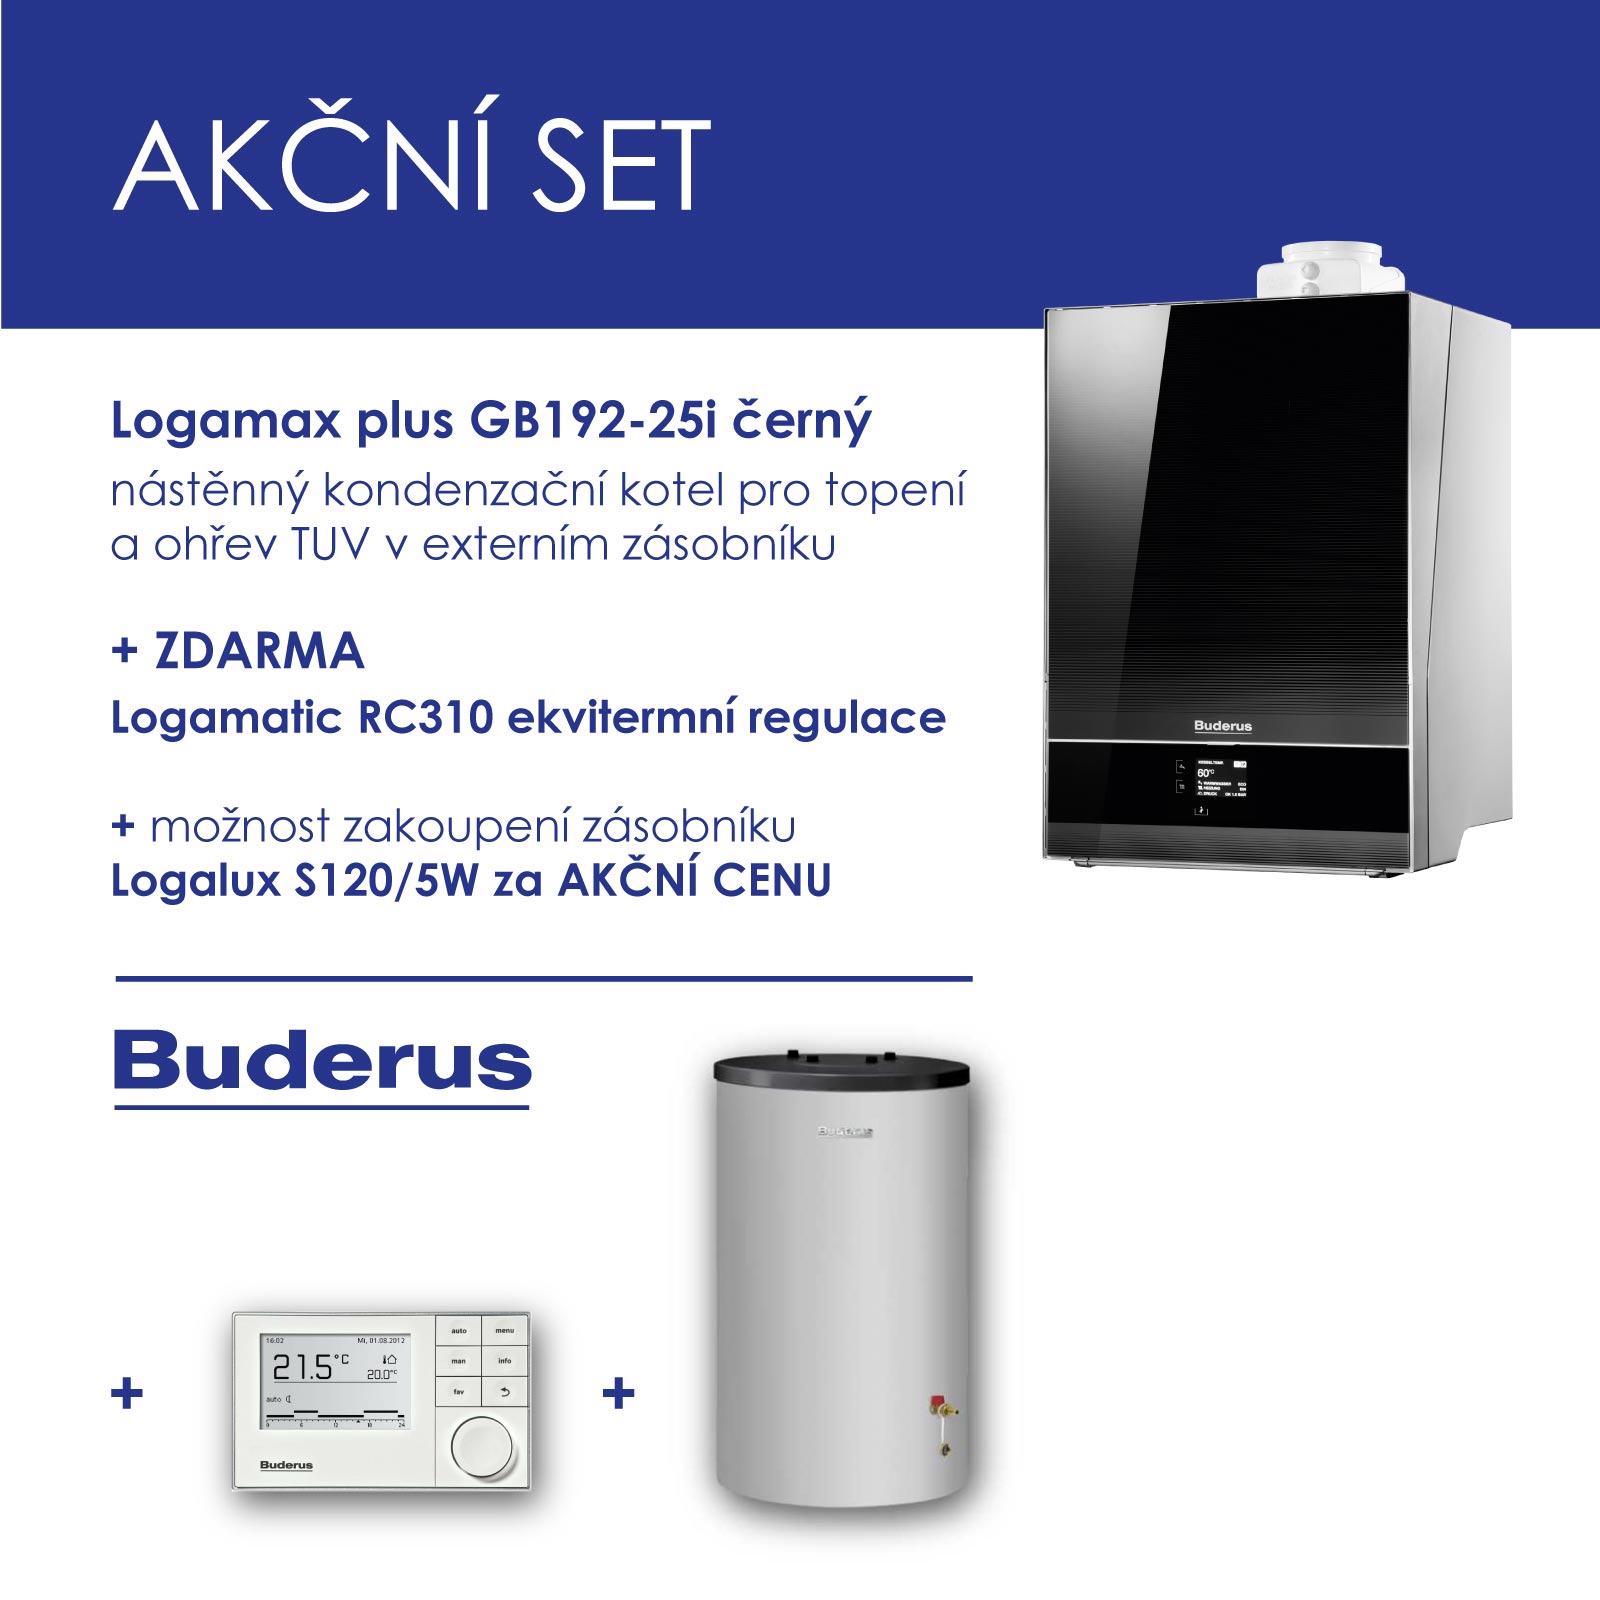 BUDERUS GB 192-25i černý , nástěnný kondenzační kotel, topení+RC 310 ekvitermní regulátor